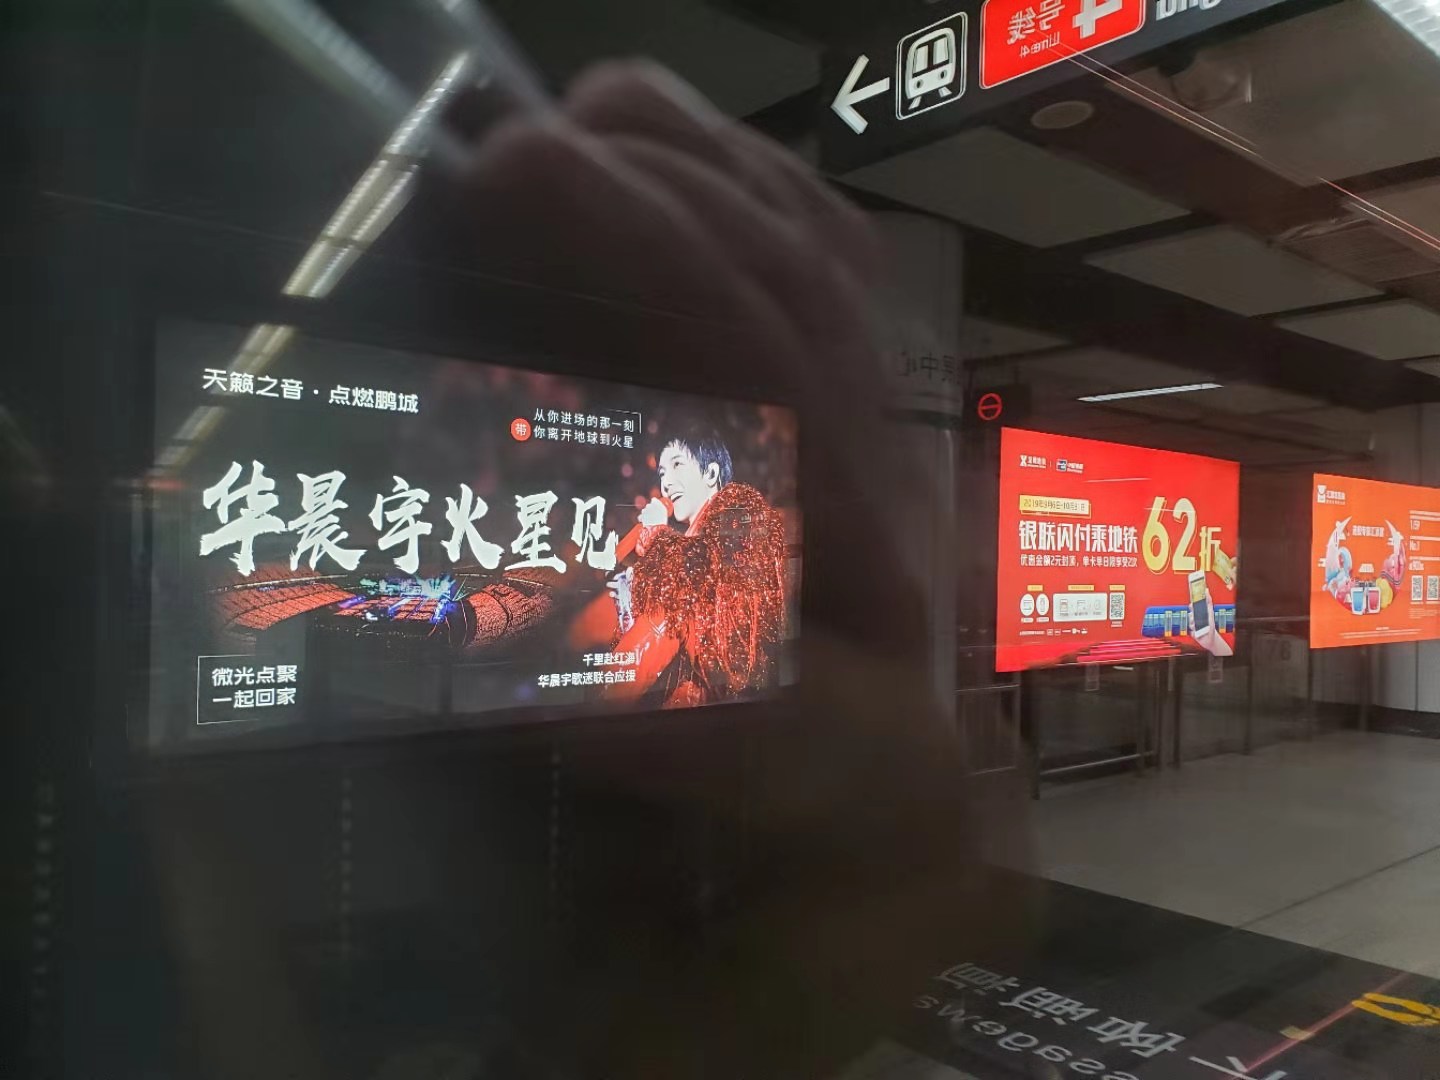 深圳地铁广告位价位性价比高的原因